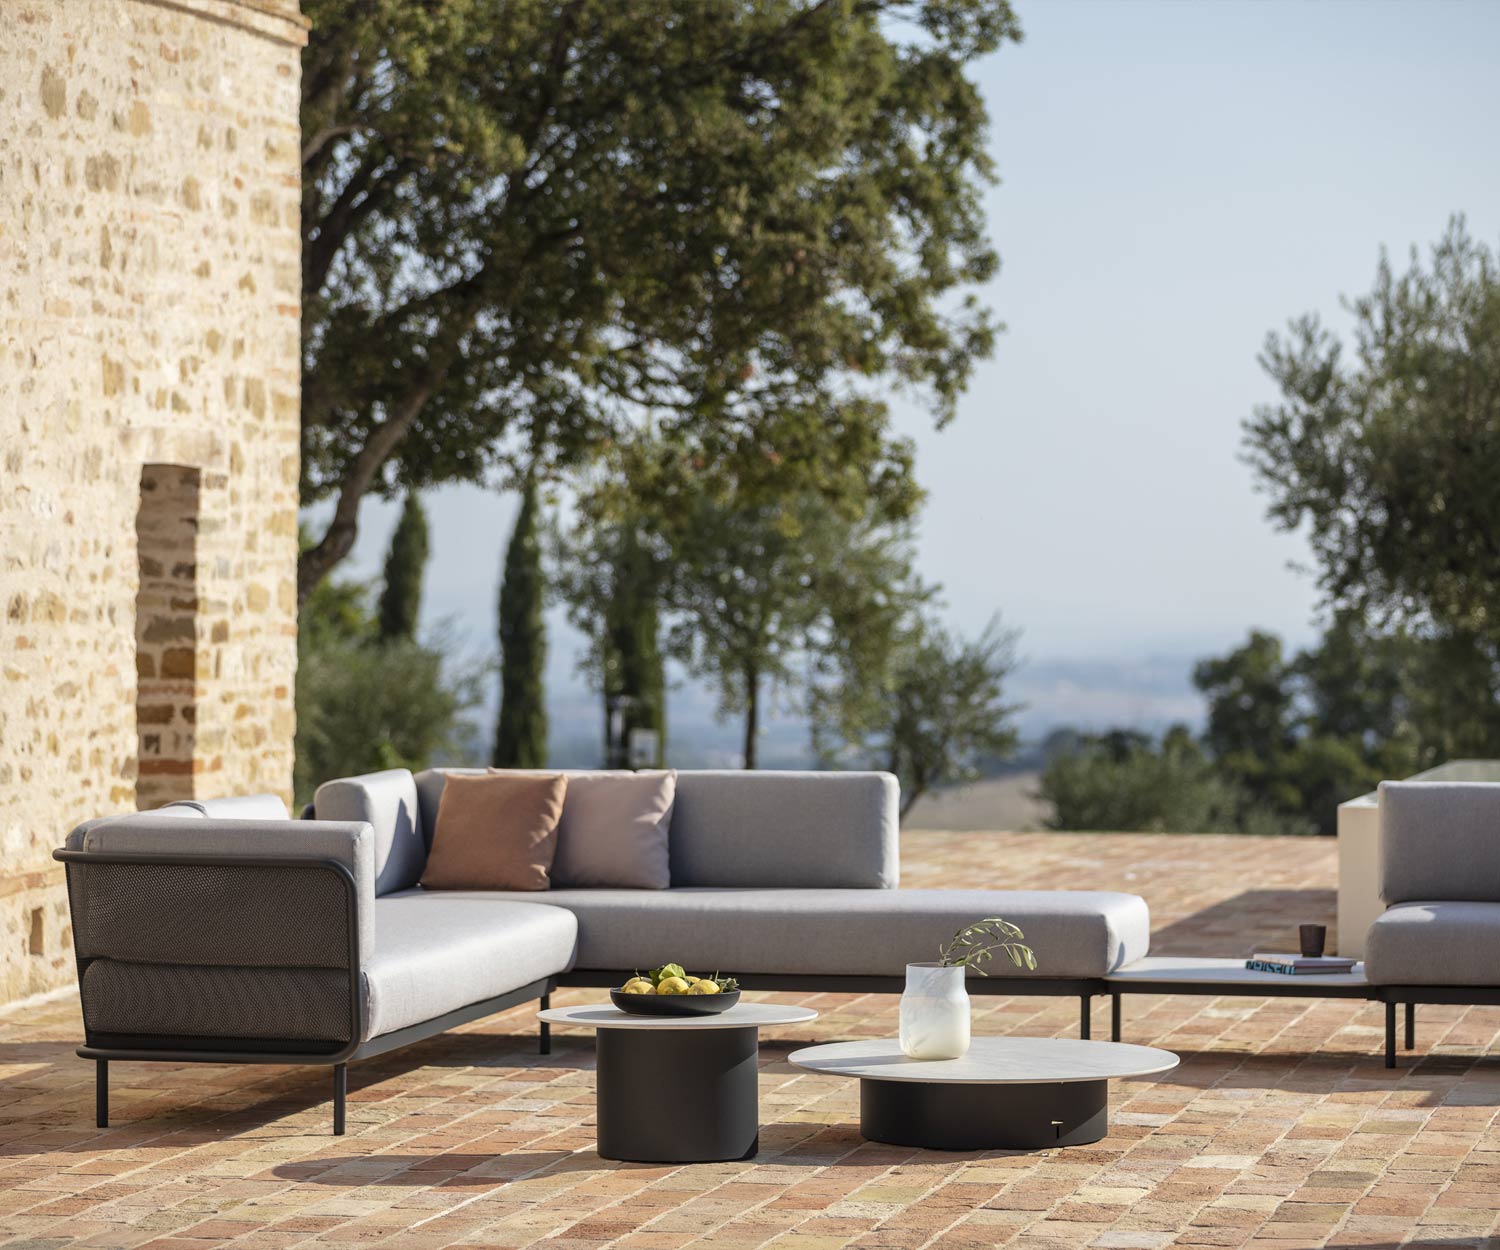 Canapé de jardin design Baza de Todus sur la terrasse dans les régions méditerranéennes